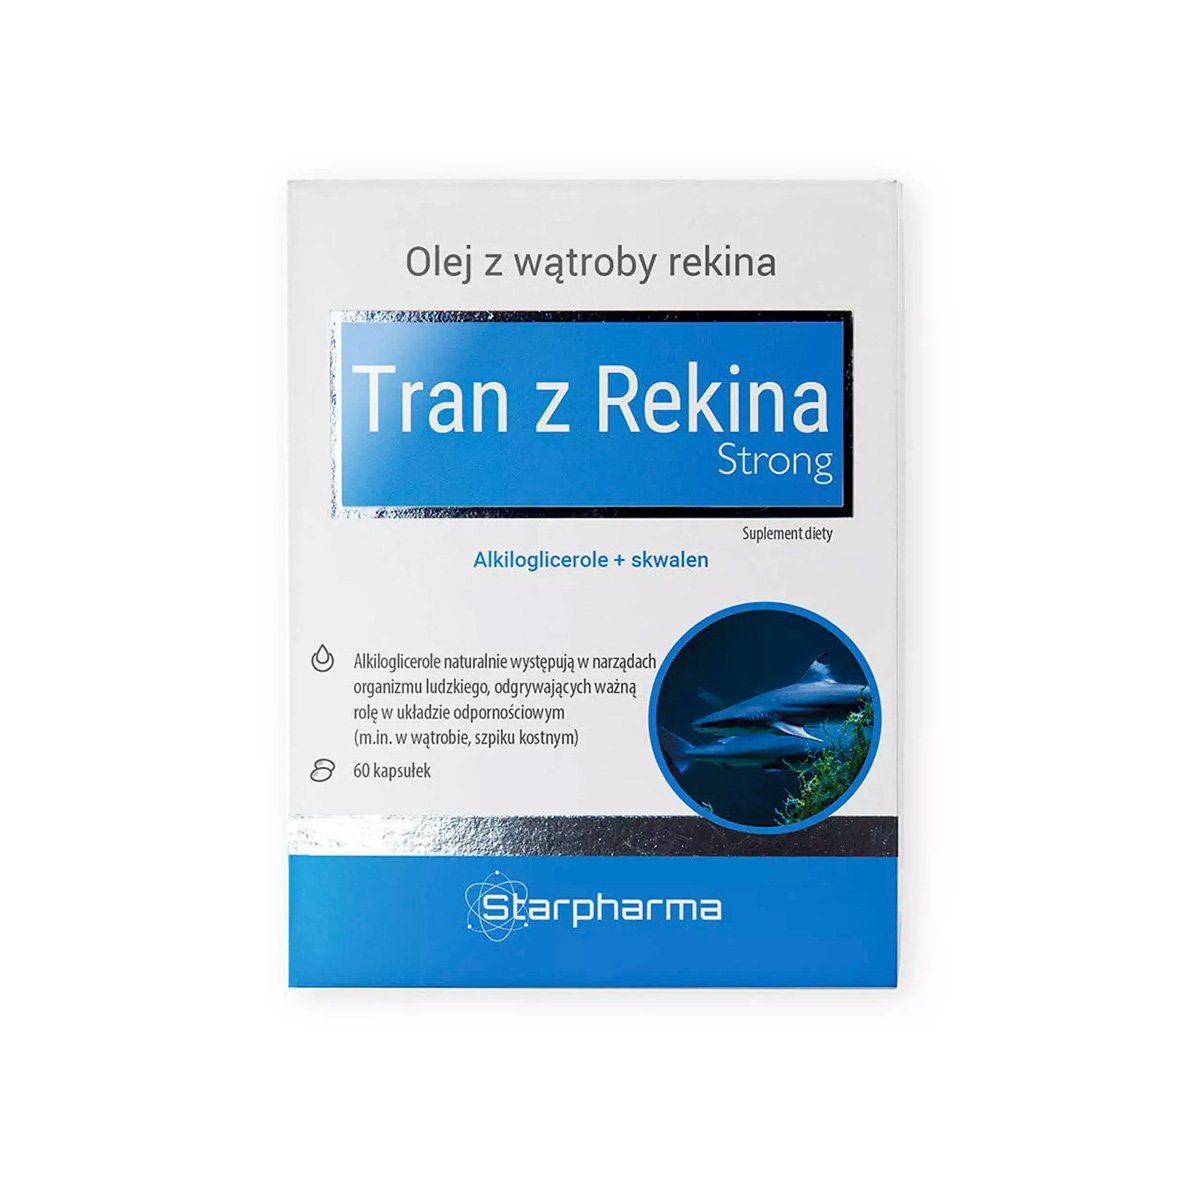 Zdjęcia - Witaminy i składniki mineralne Starpharma Tran Z Rekina Strong Suplement diety, 60 kaps. 